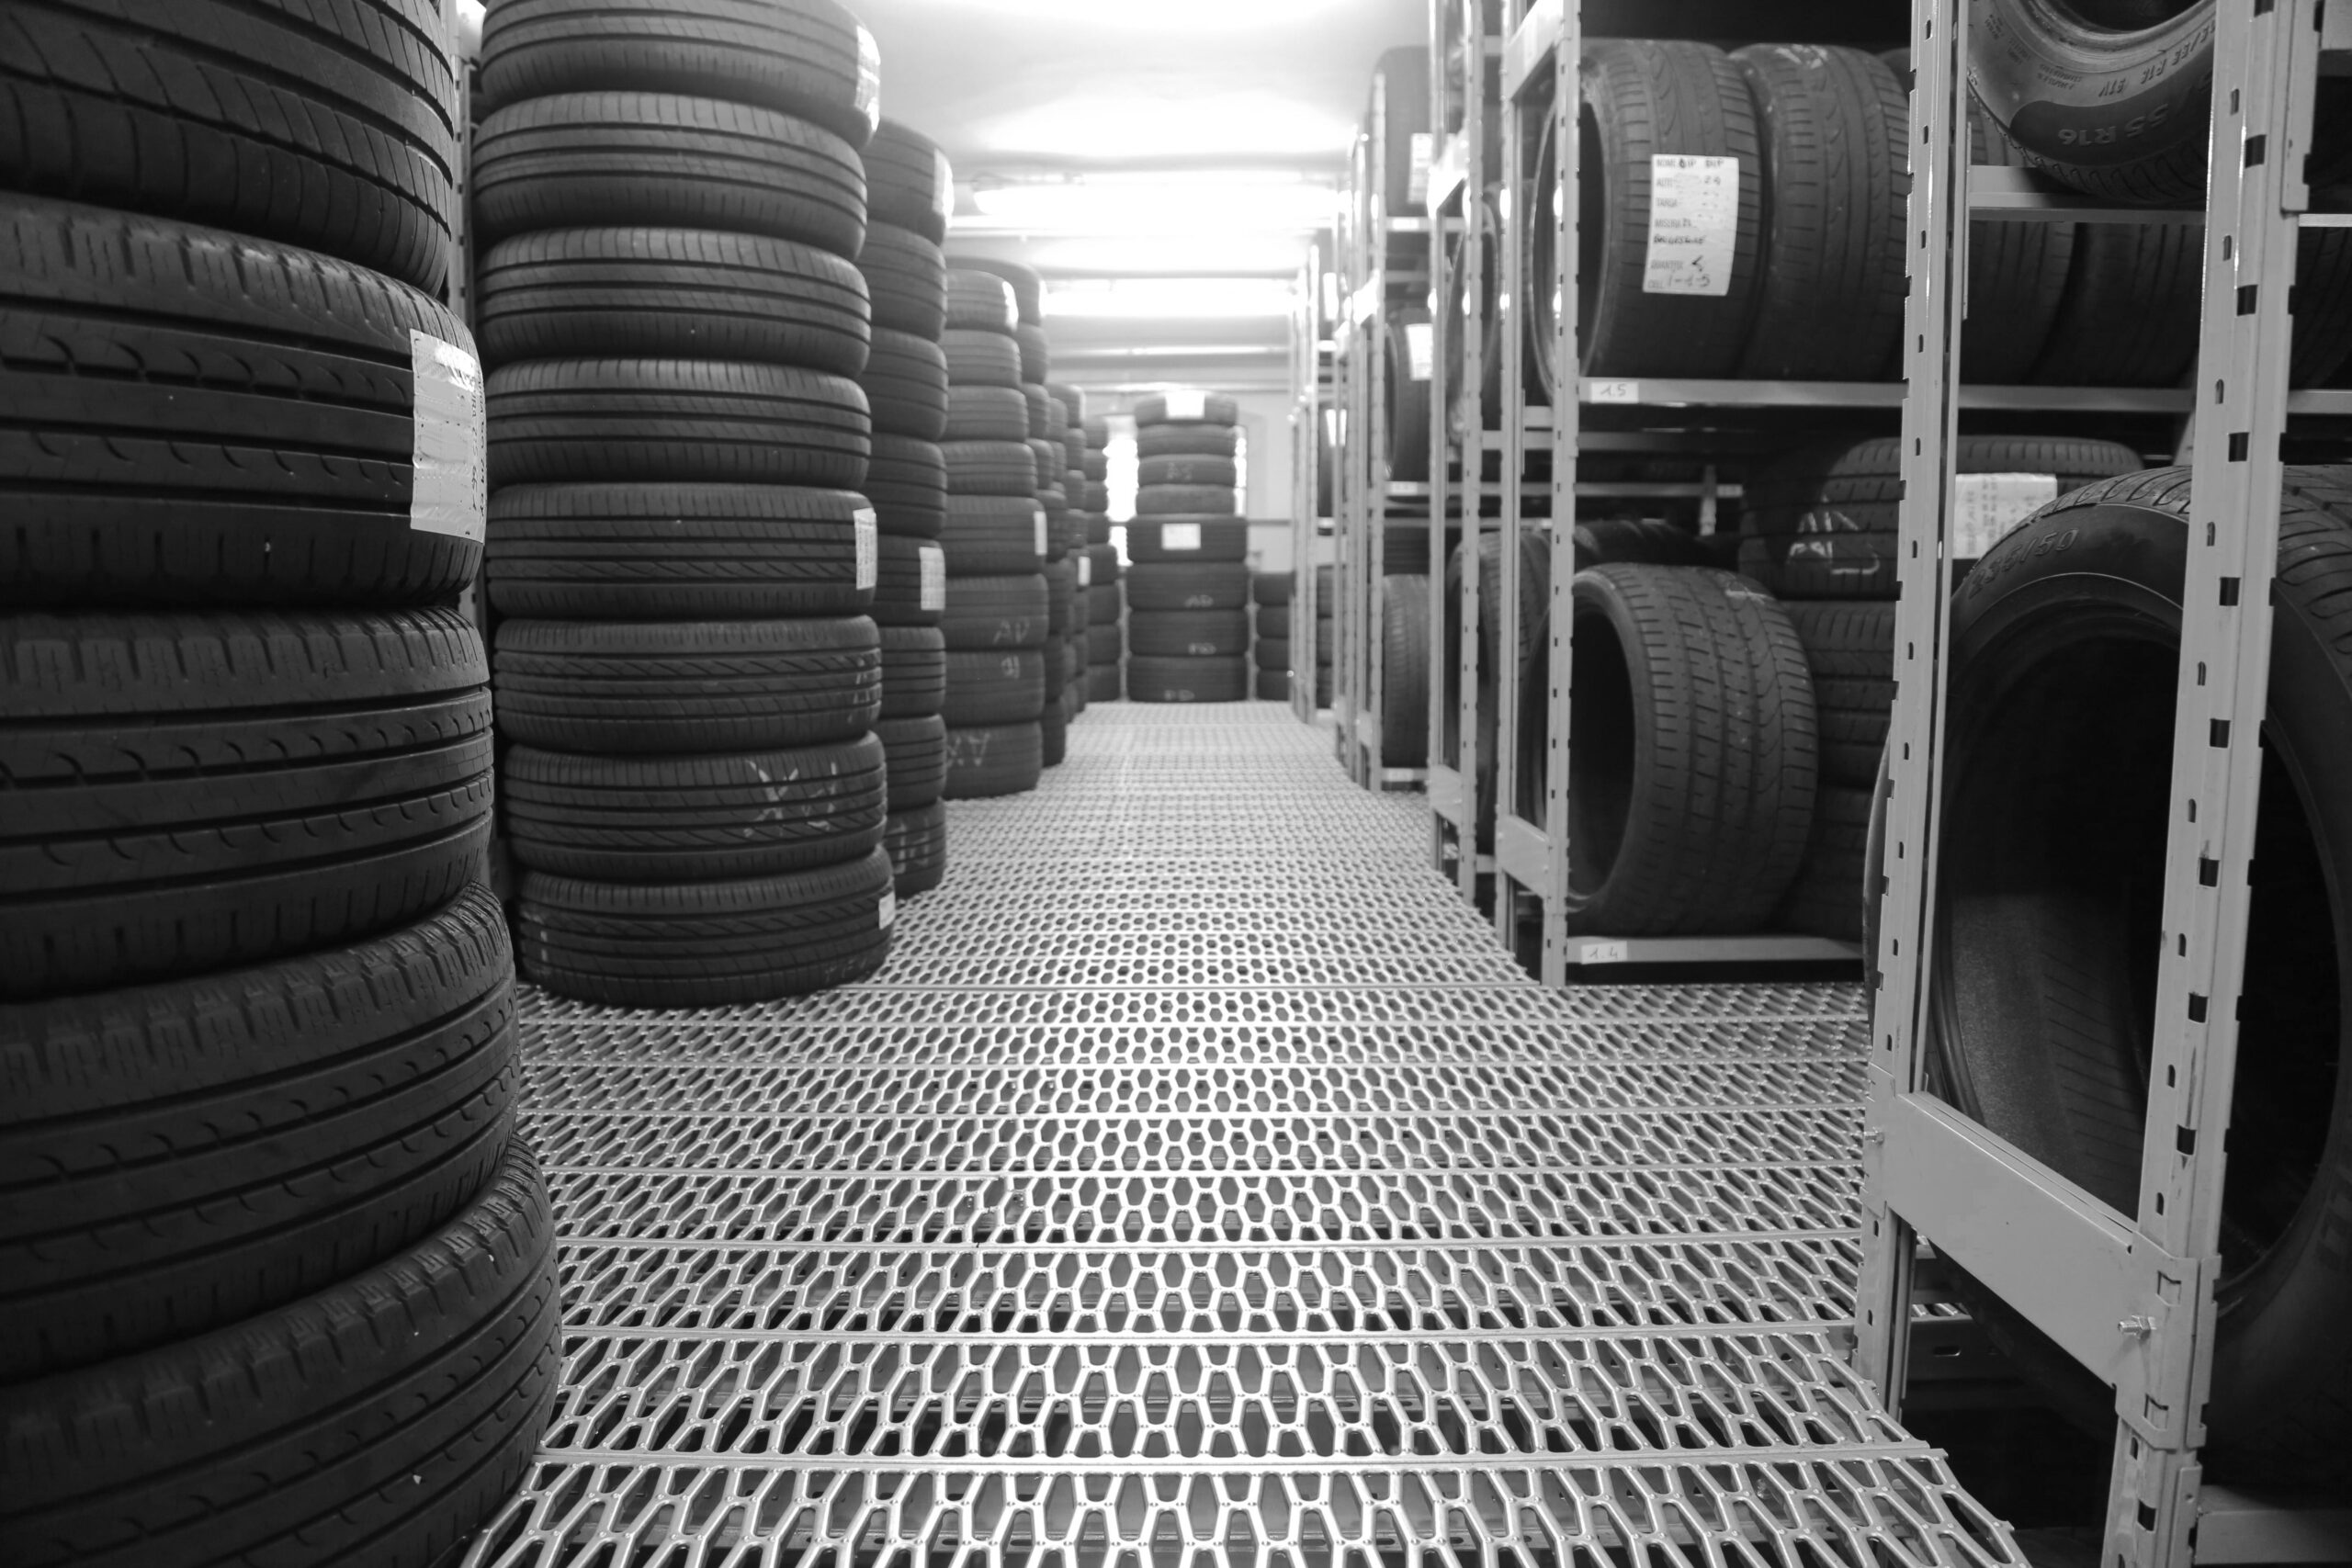 Implémentation d’une solution innovante au sein d’une entreprise de service spécialisée dans les pneumatiques et l’entretien automobile